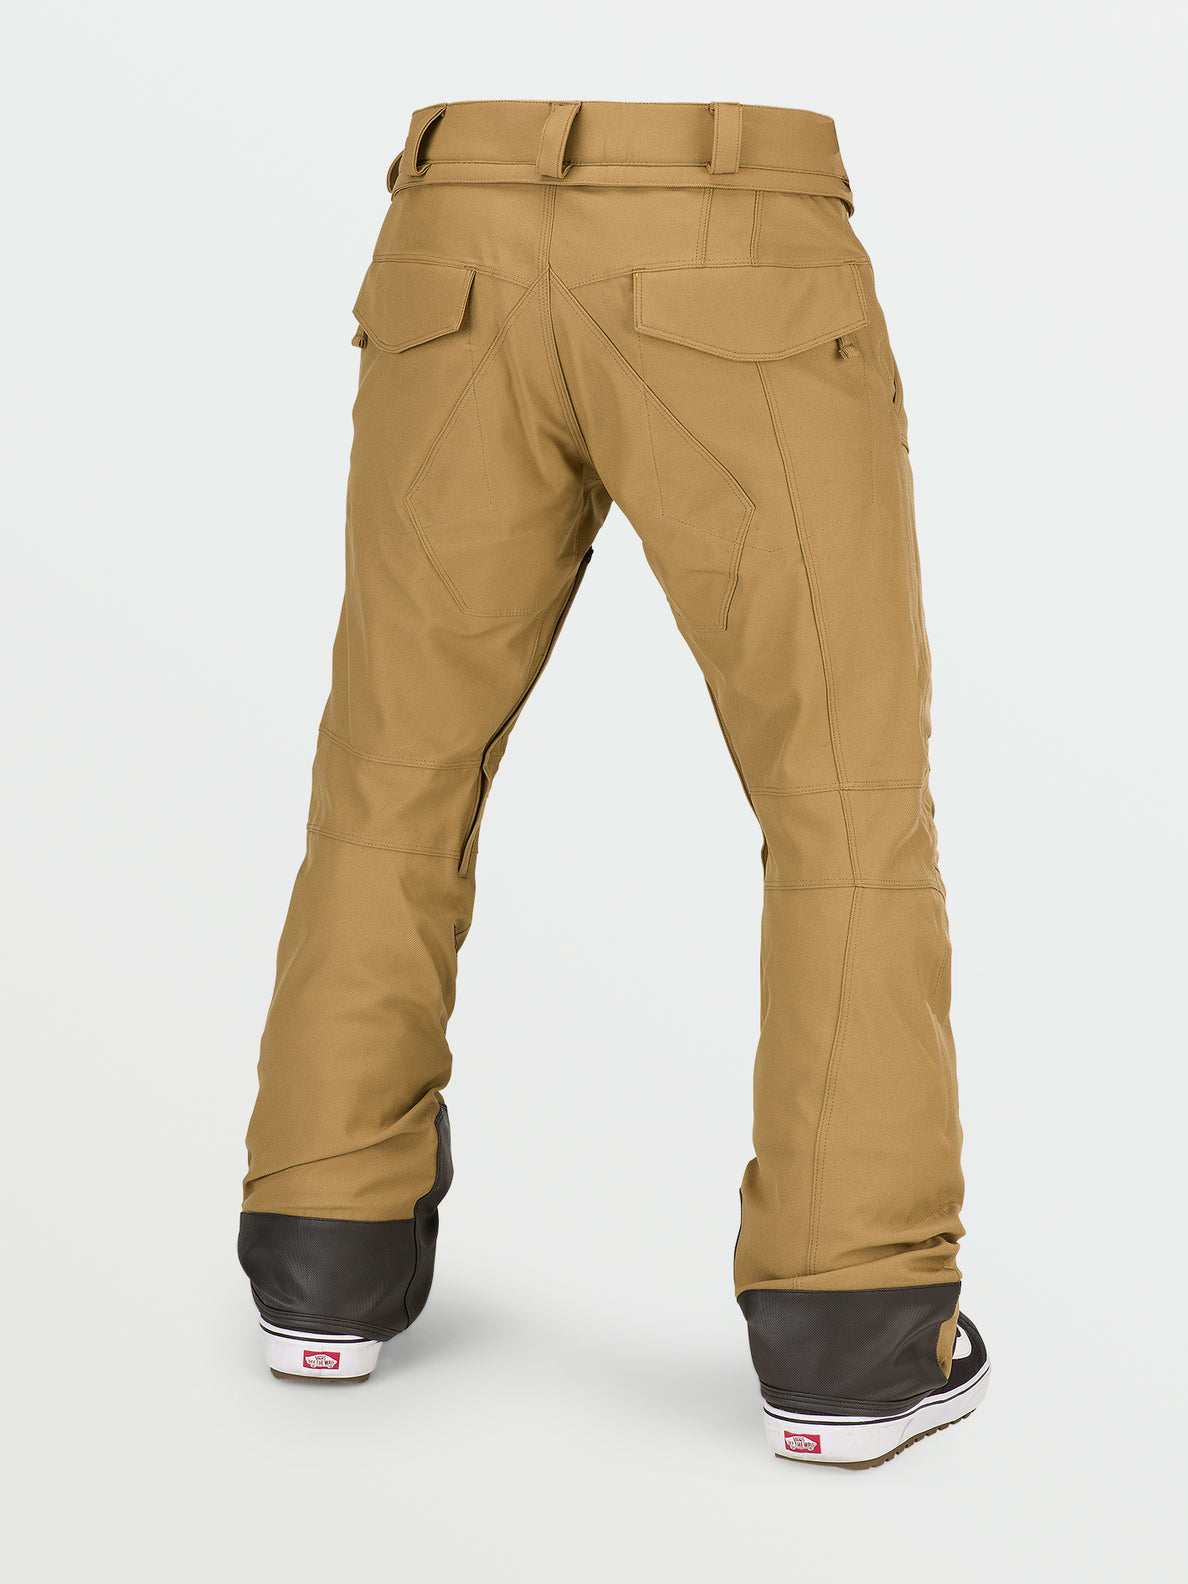 Nuovi pantaloni articolati - BURNT KHAKI (G1352211_BUK) [B]